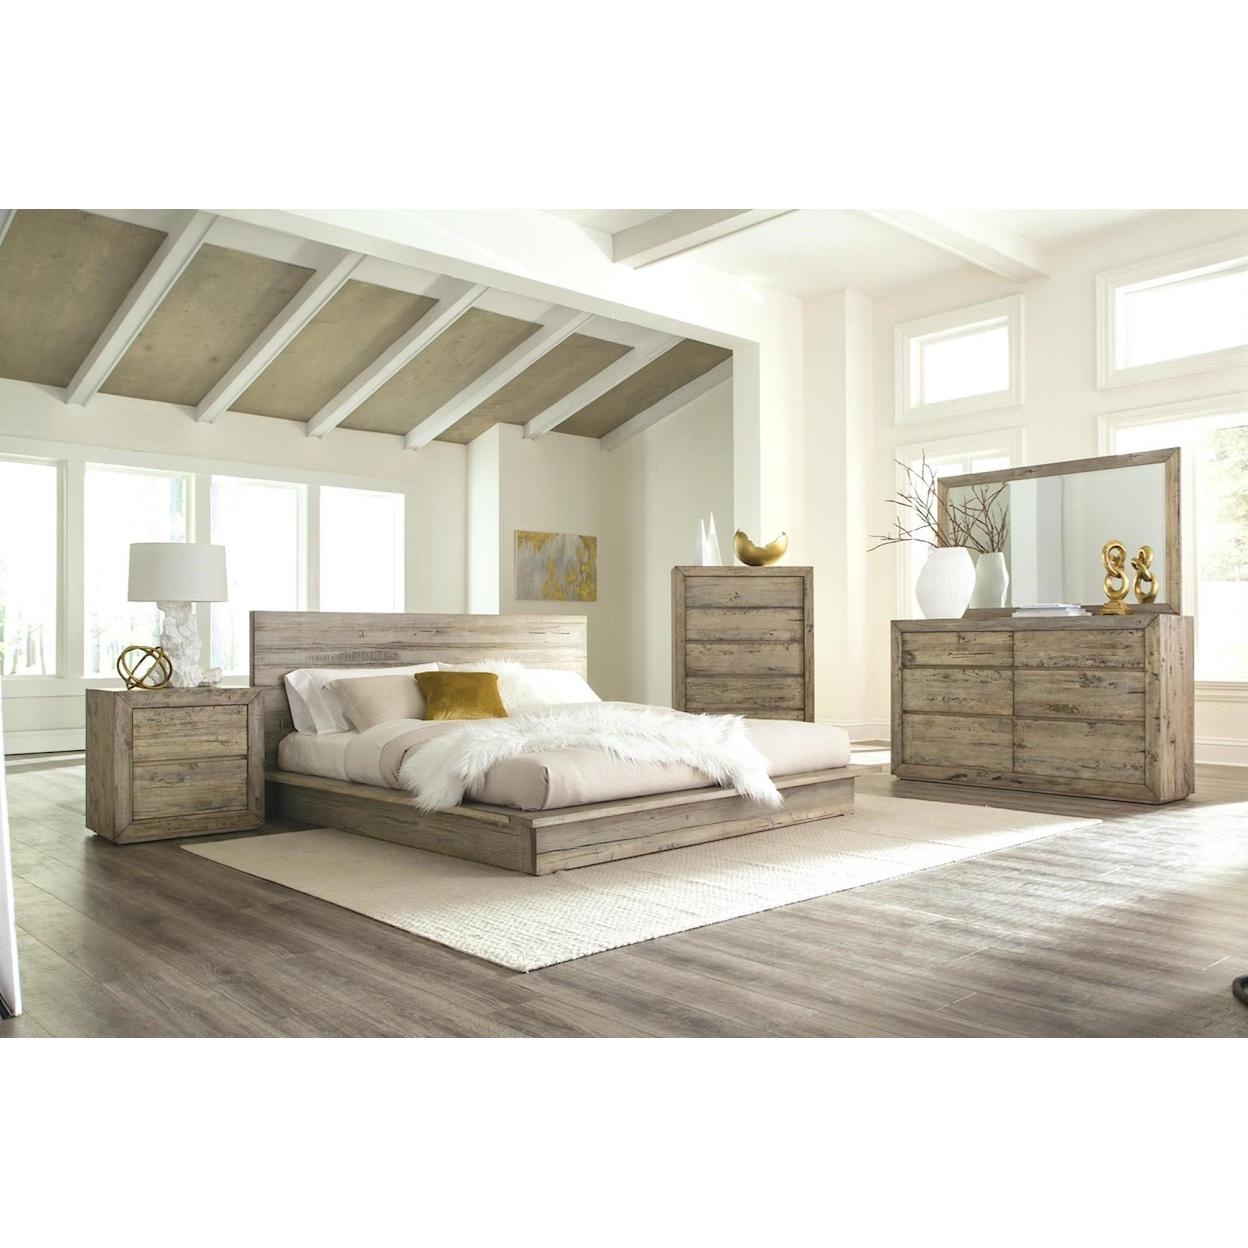 Napa Furniture Design Renewal Queen Bedroom Group